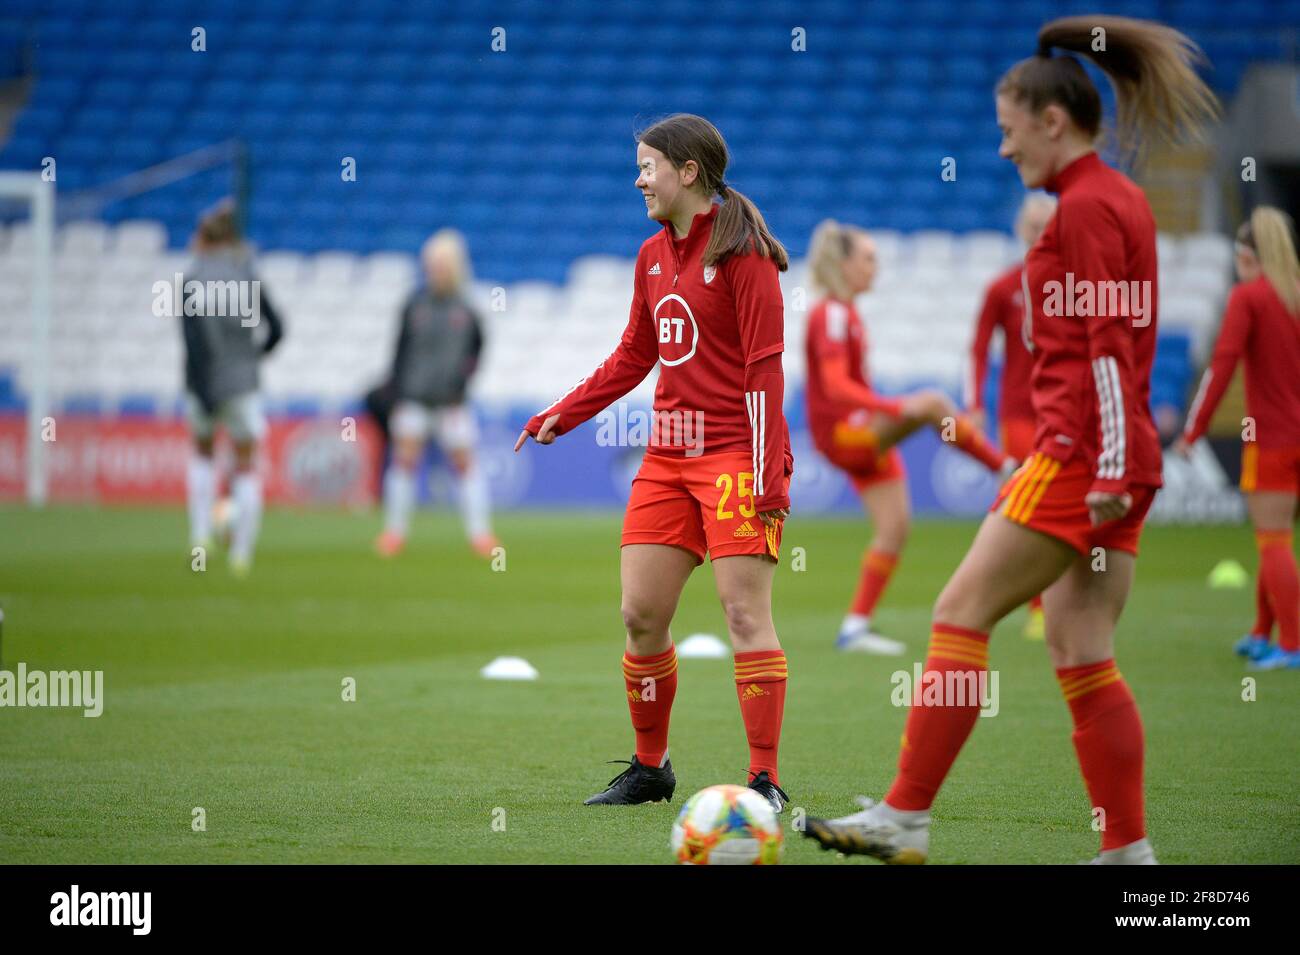 Wales ist Gastgeber für Dänemark in einem UEFA-Fußballfreundschaftssemdem im Cardiff City Stadium: Abgebildet ist Esther Morgan von Wales. Quelle: Andrew Dowling/Alamy Live News Stockfoto